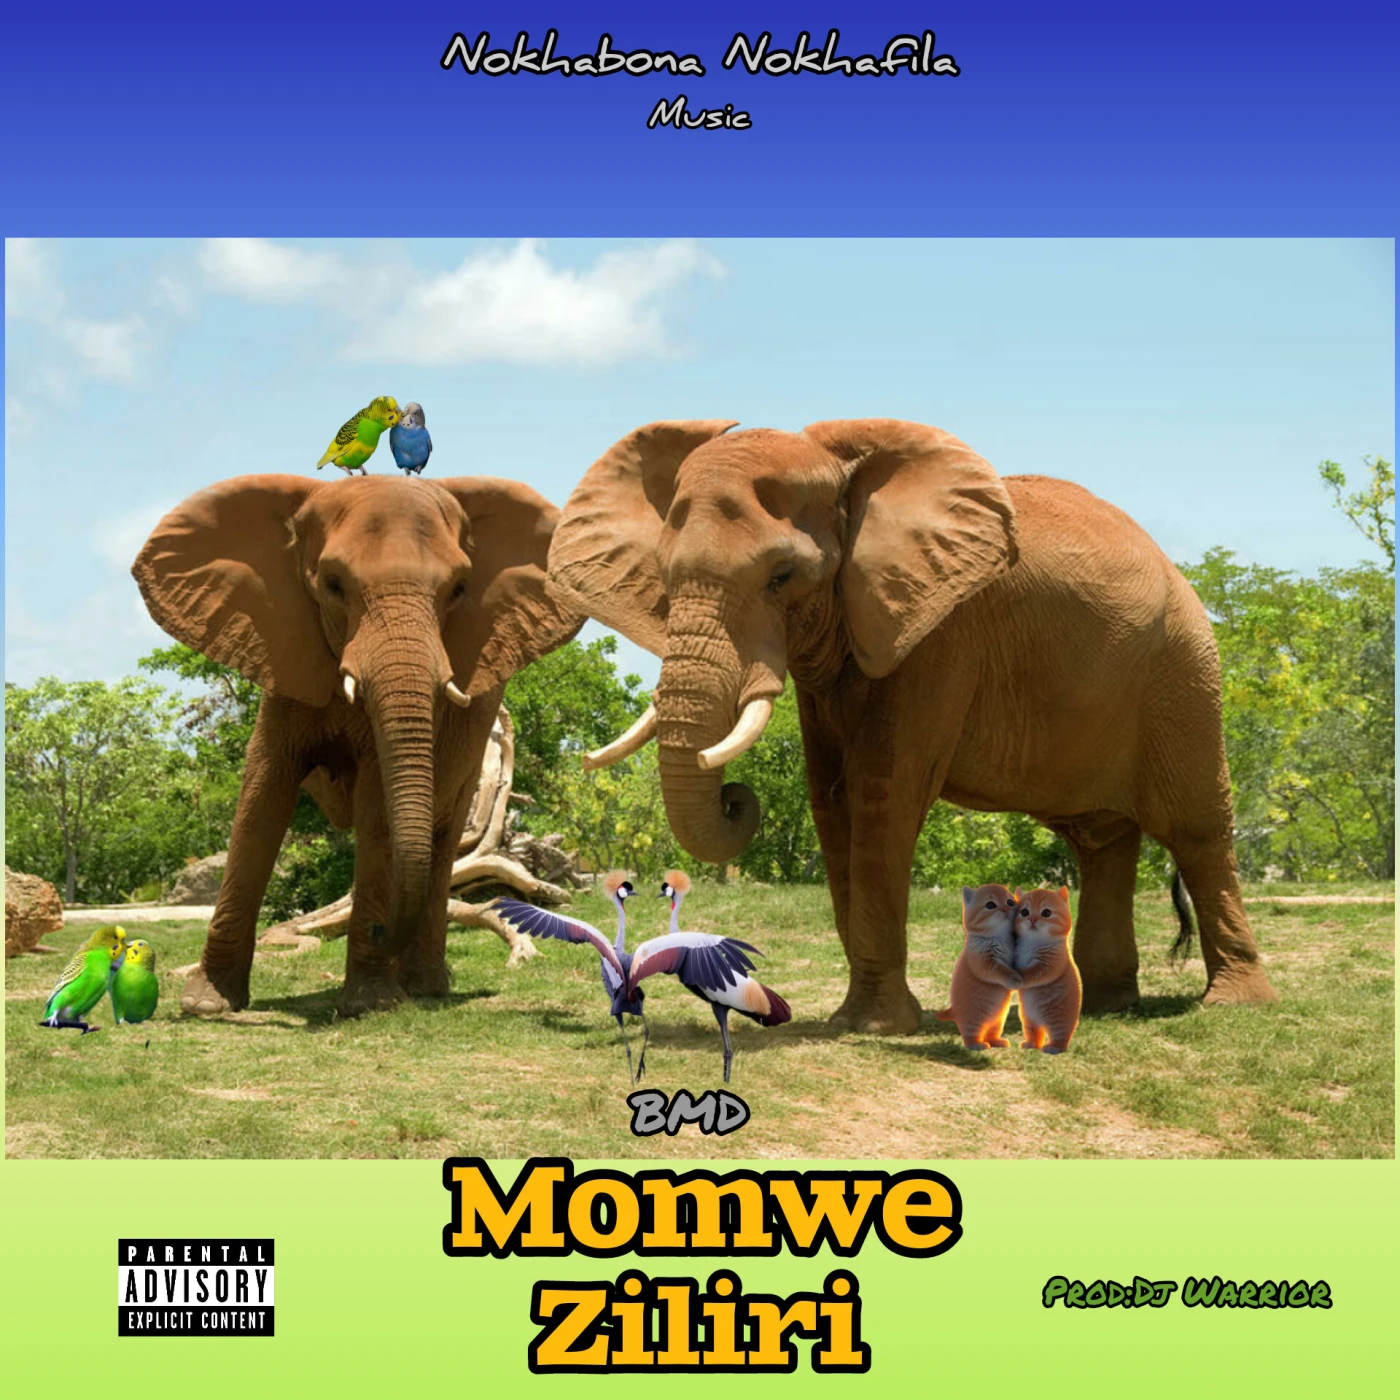 momwe-ziliri-bmd-just malawi